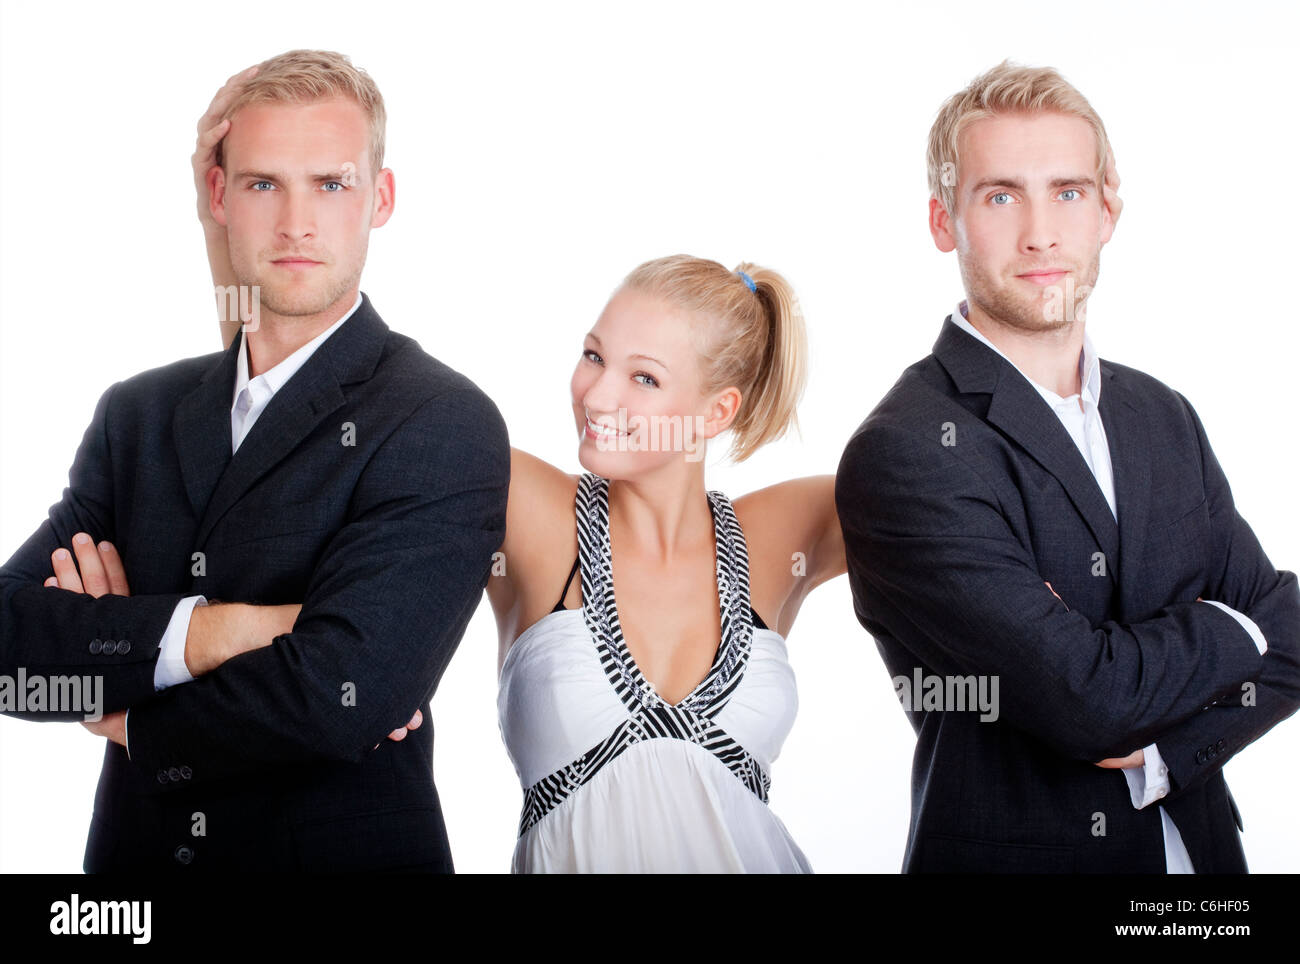 junge Frau im Kleid steht zwischen zwei Männern in Anzügen - isoliert auf weiss Stockfoto